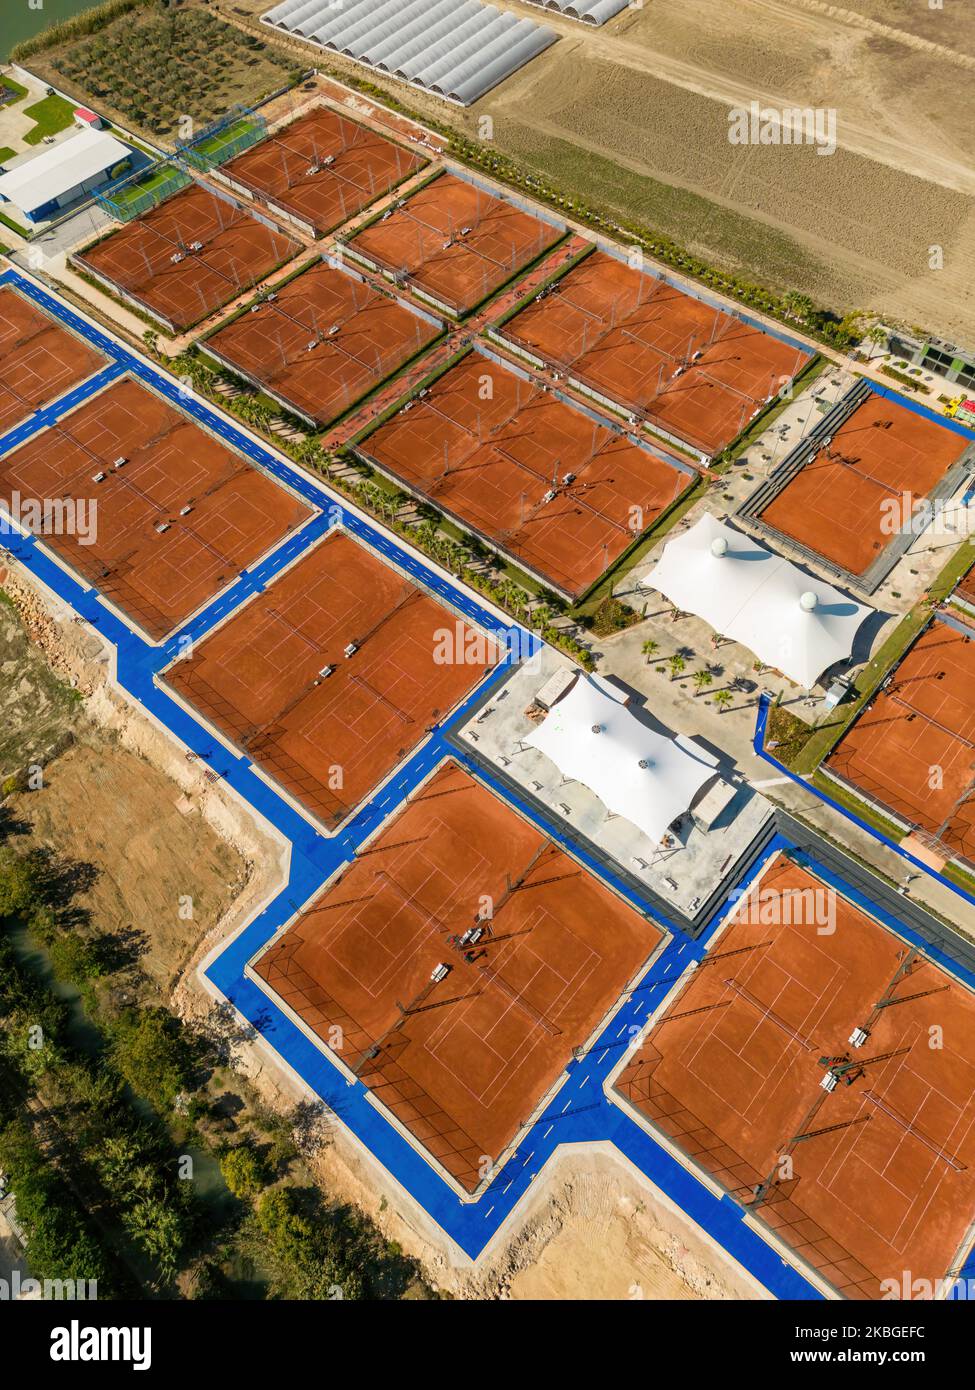 Vista aerea del campo da tennis in terra battuta in una giornata di sole Foto Stock